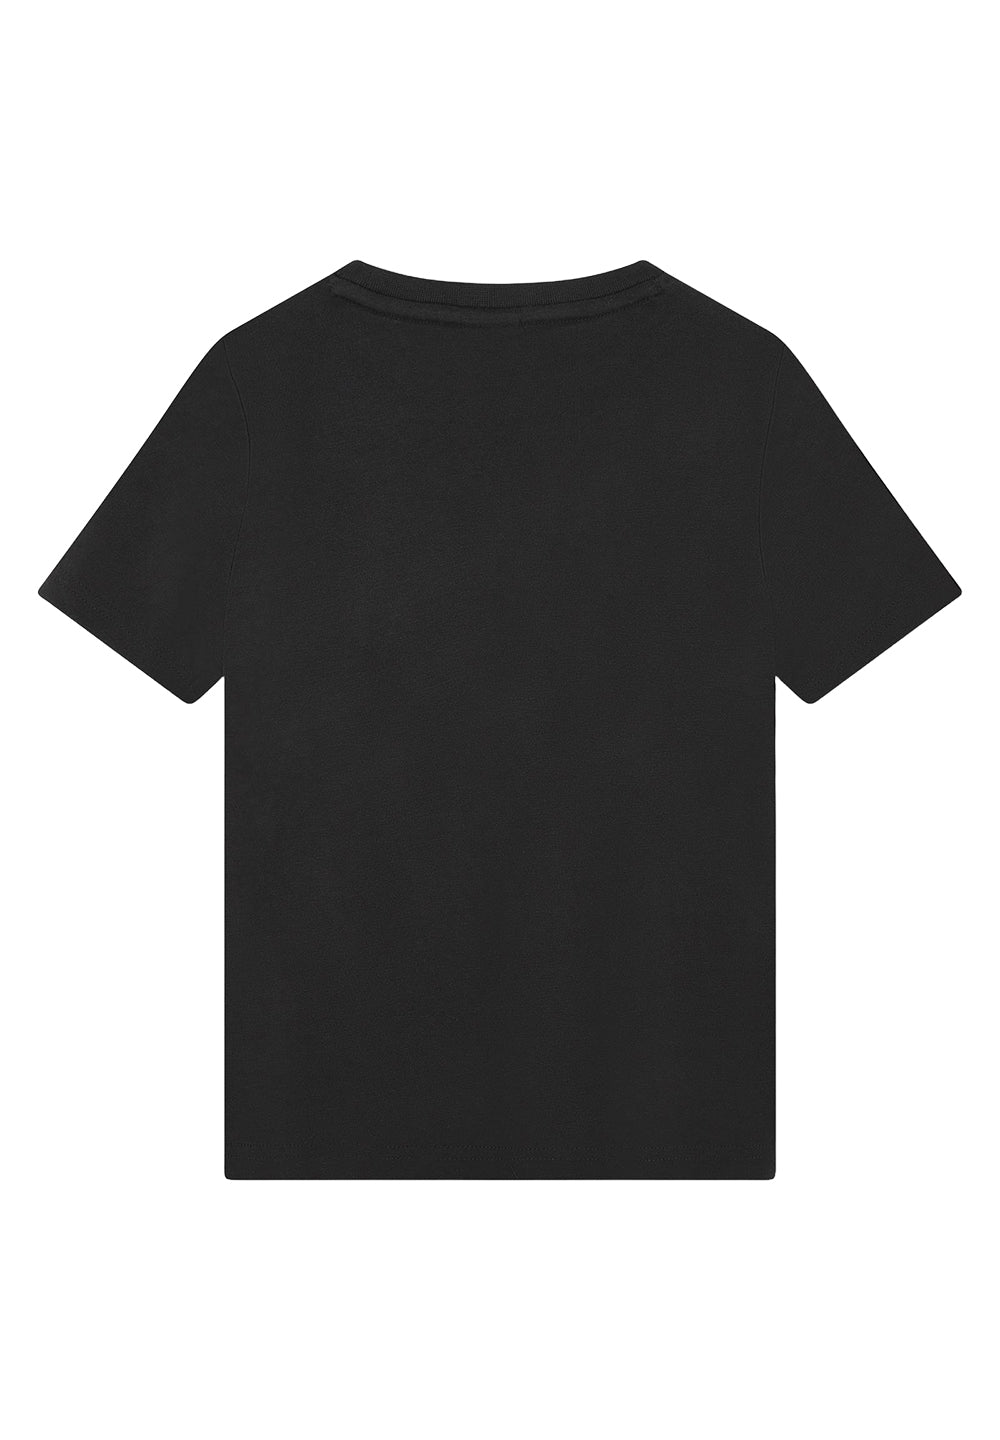 T-shirt nera per bambino - Primamoda kids